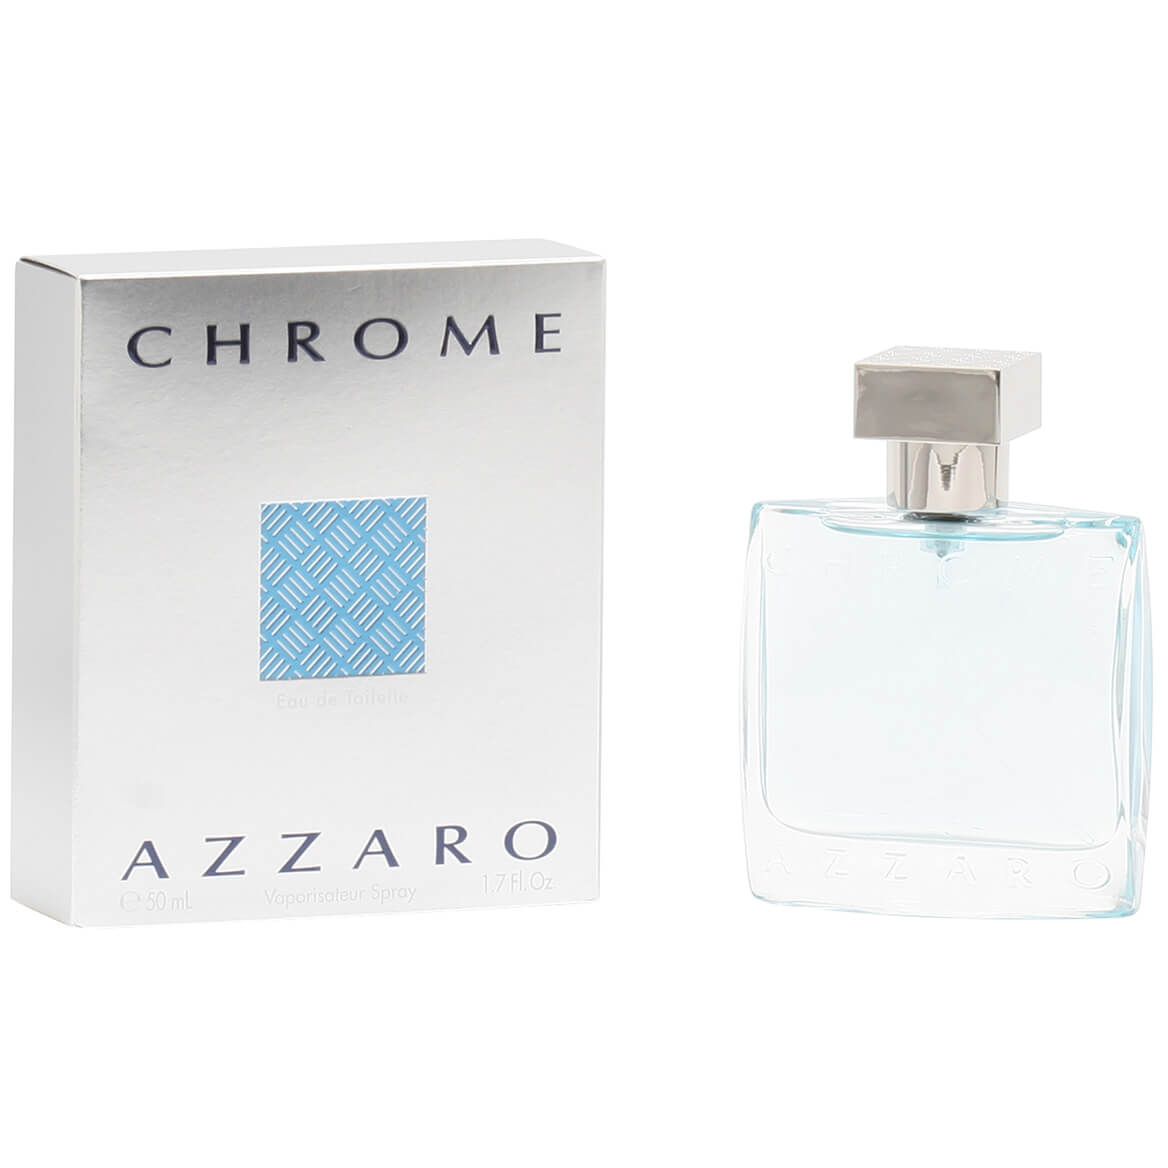 Chrome by Azzaro, EDT Spray + '-' + 352080